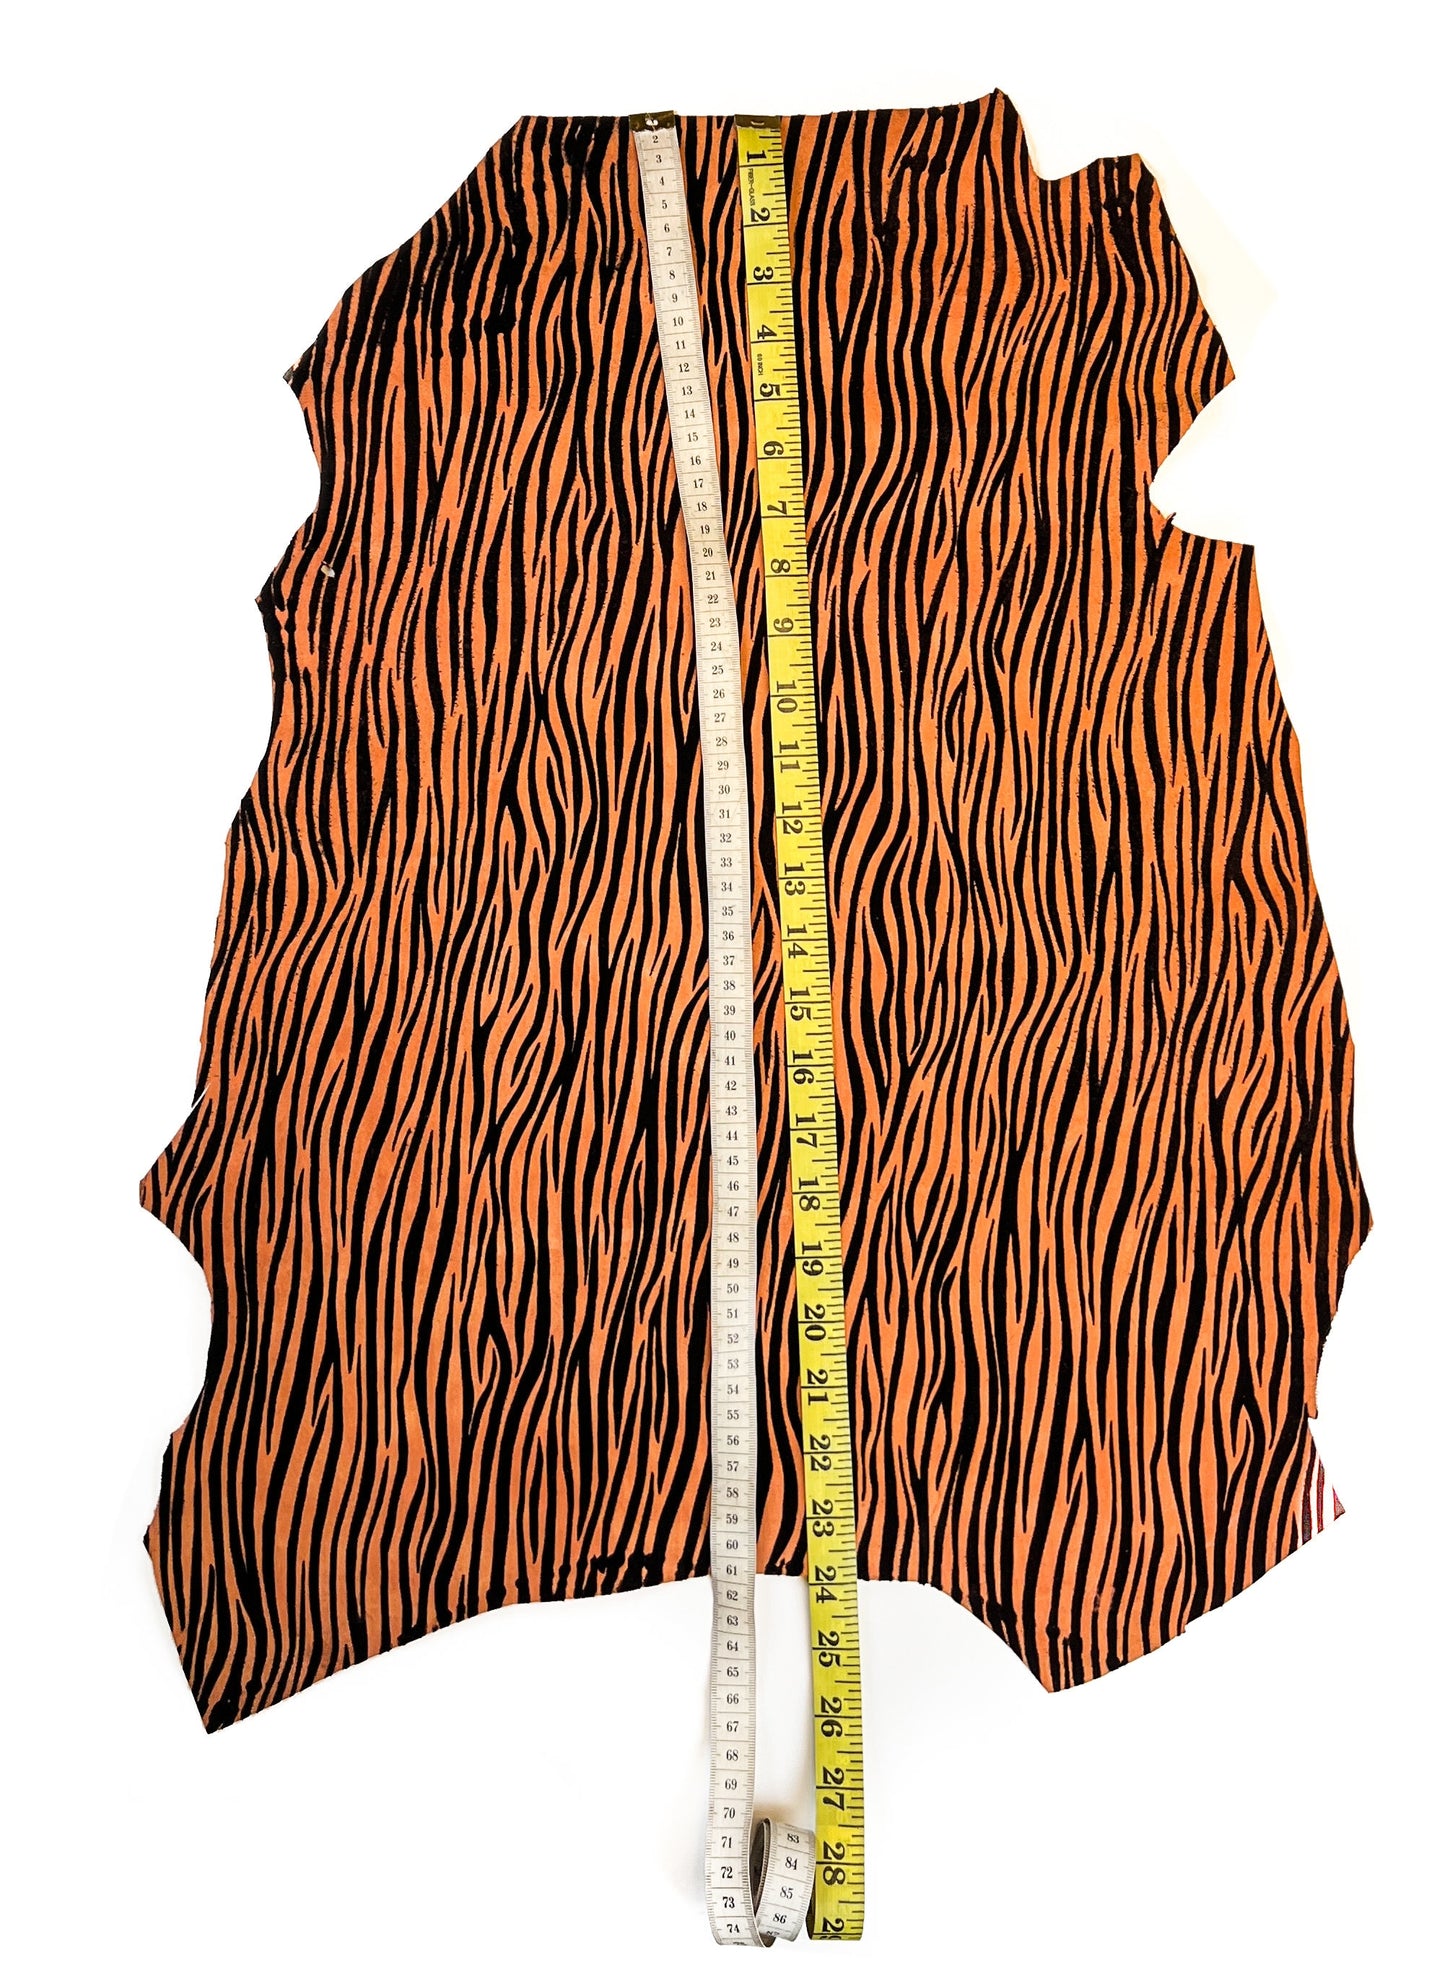 Orange Zebra Lambskin Suede With Zebra Print 0.8-1.2mm/2-3oz